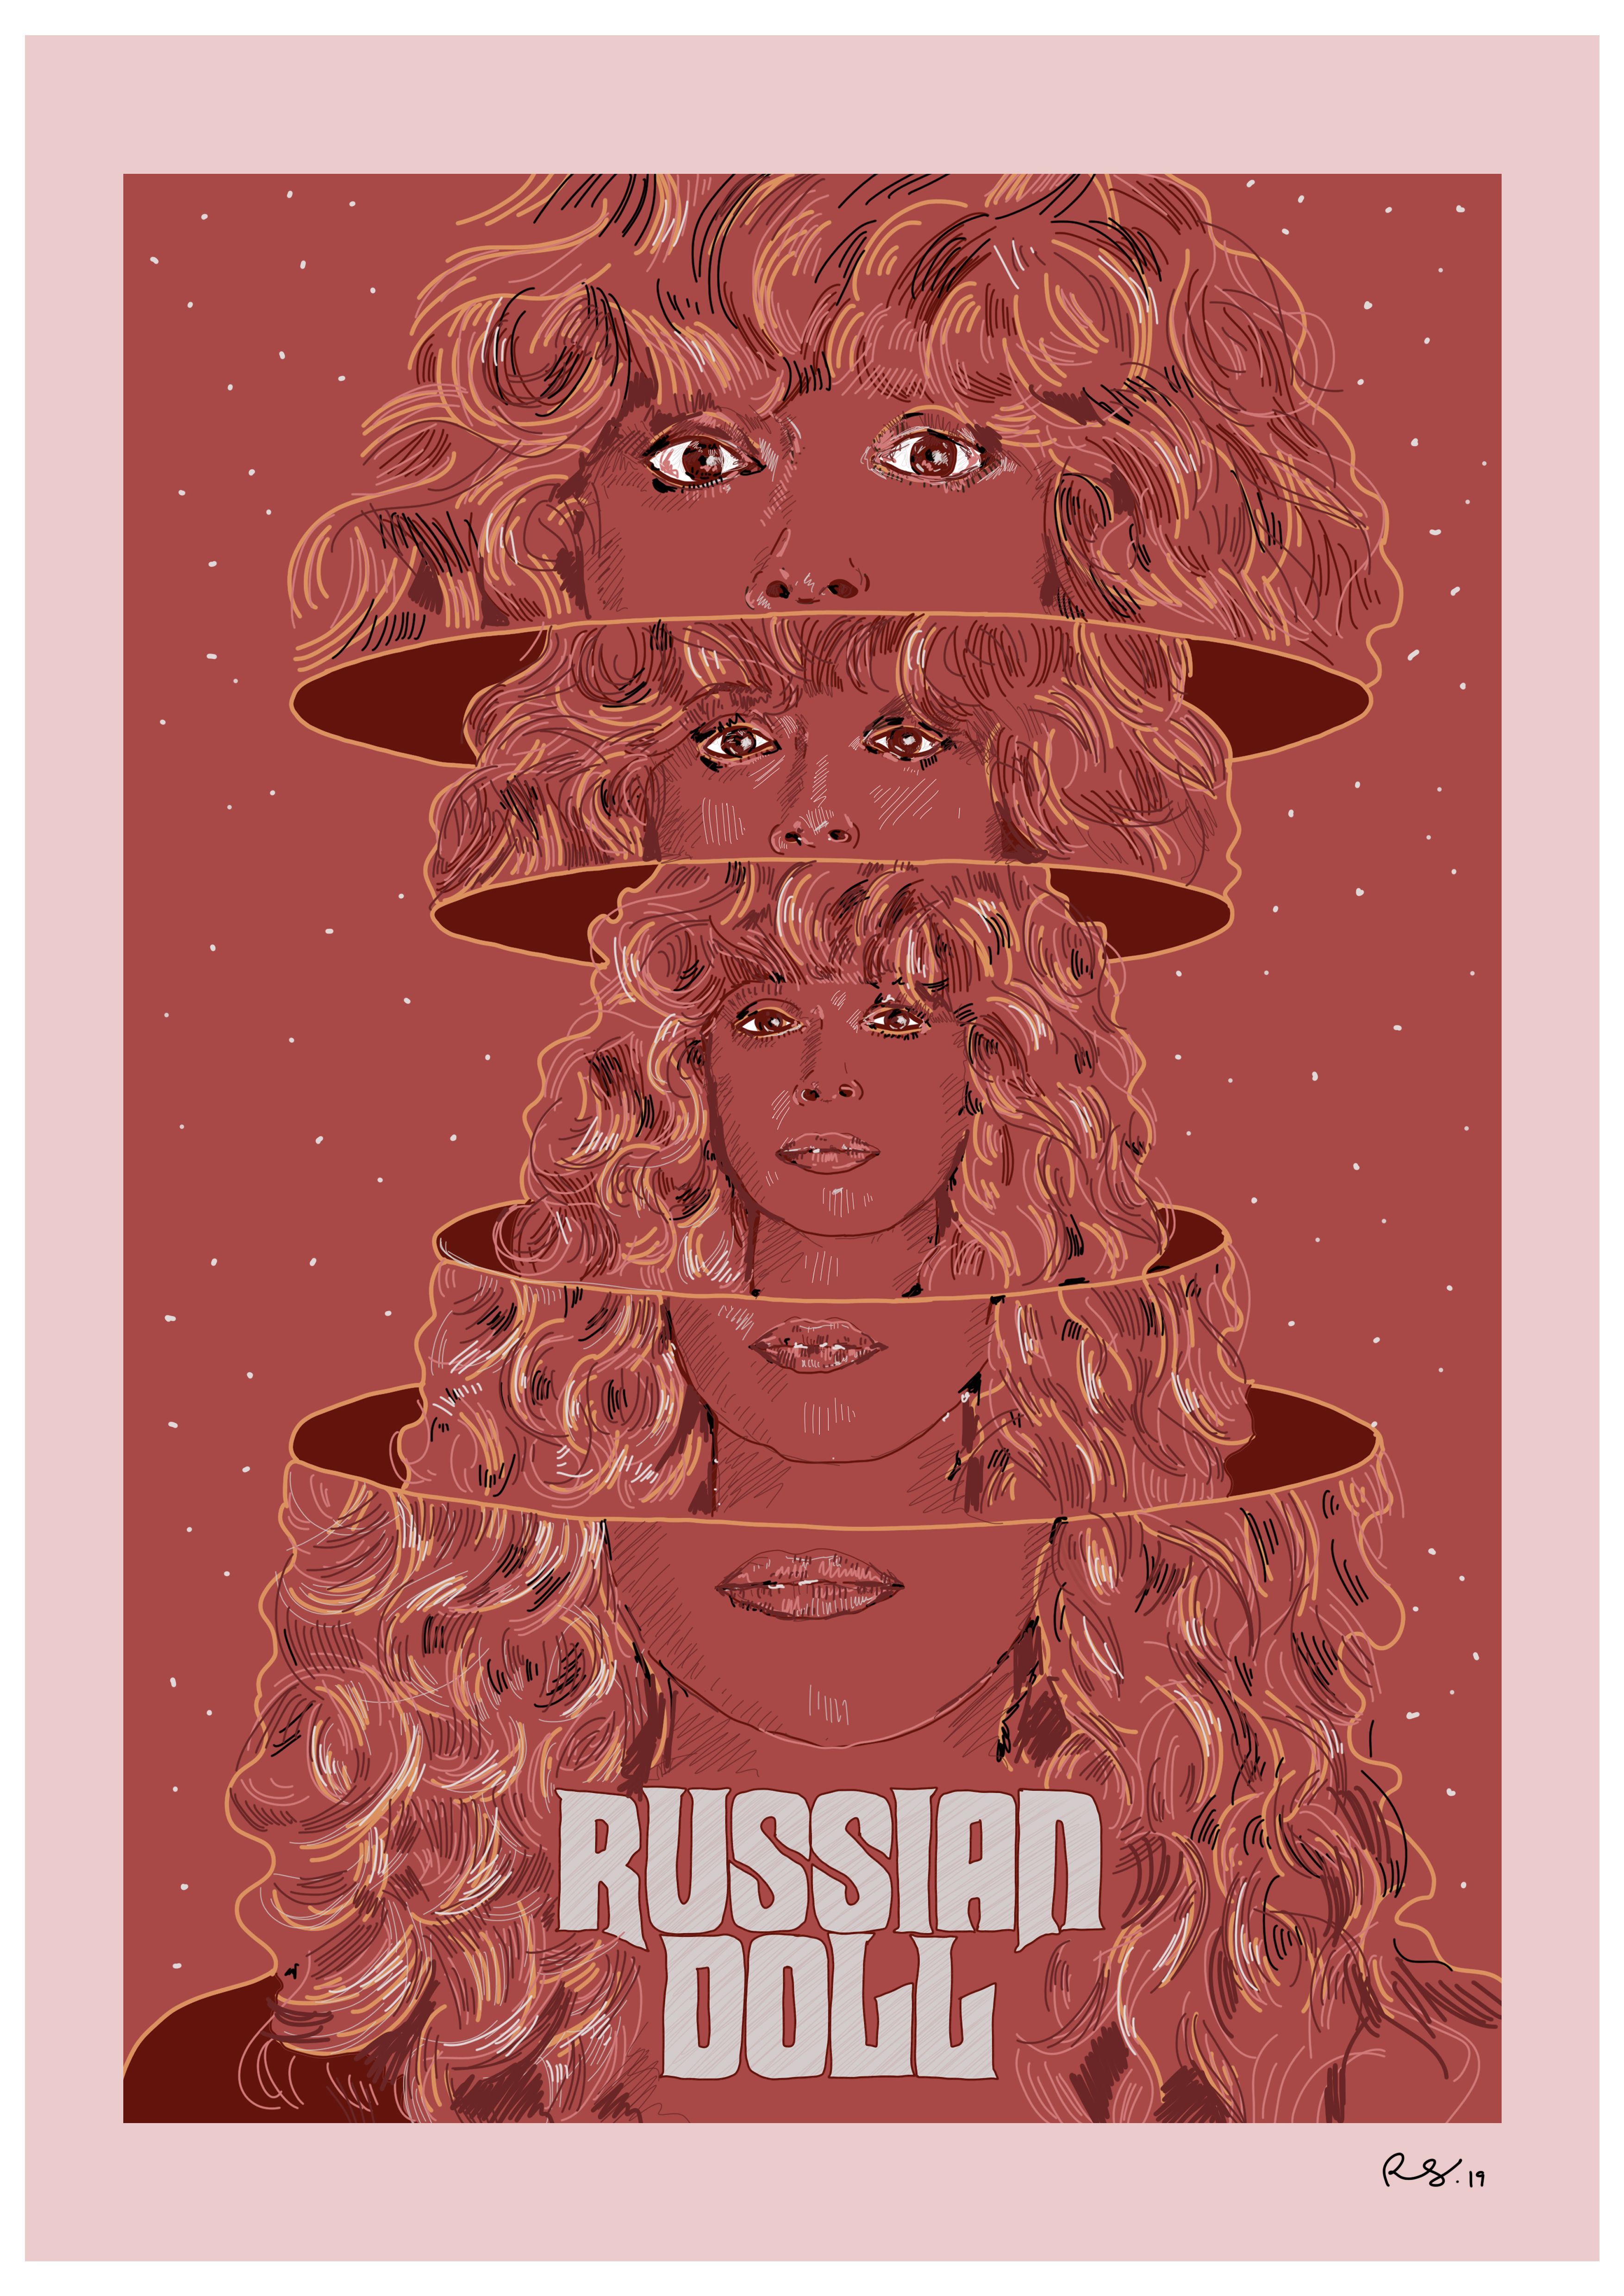 Russian Doll, Netflix 2019. Russian doll, Dolls, Illustration print